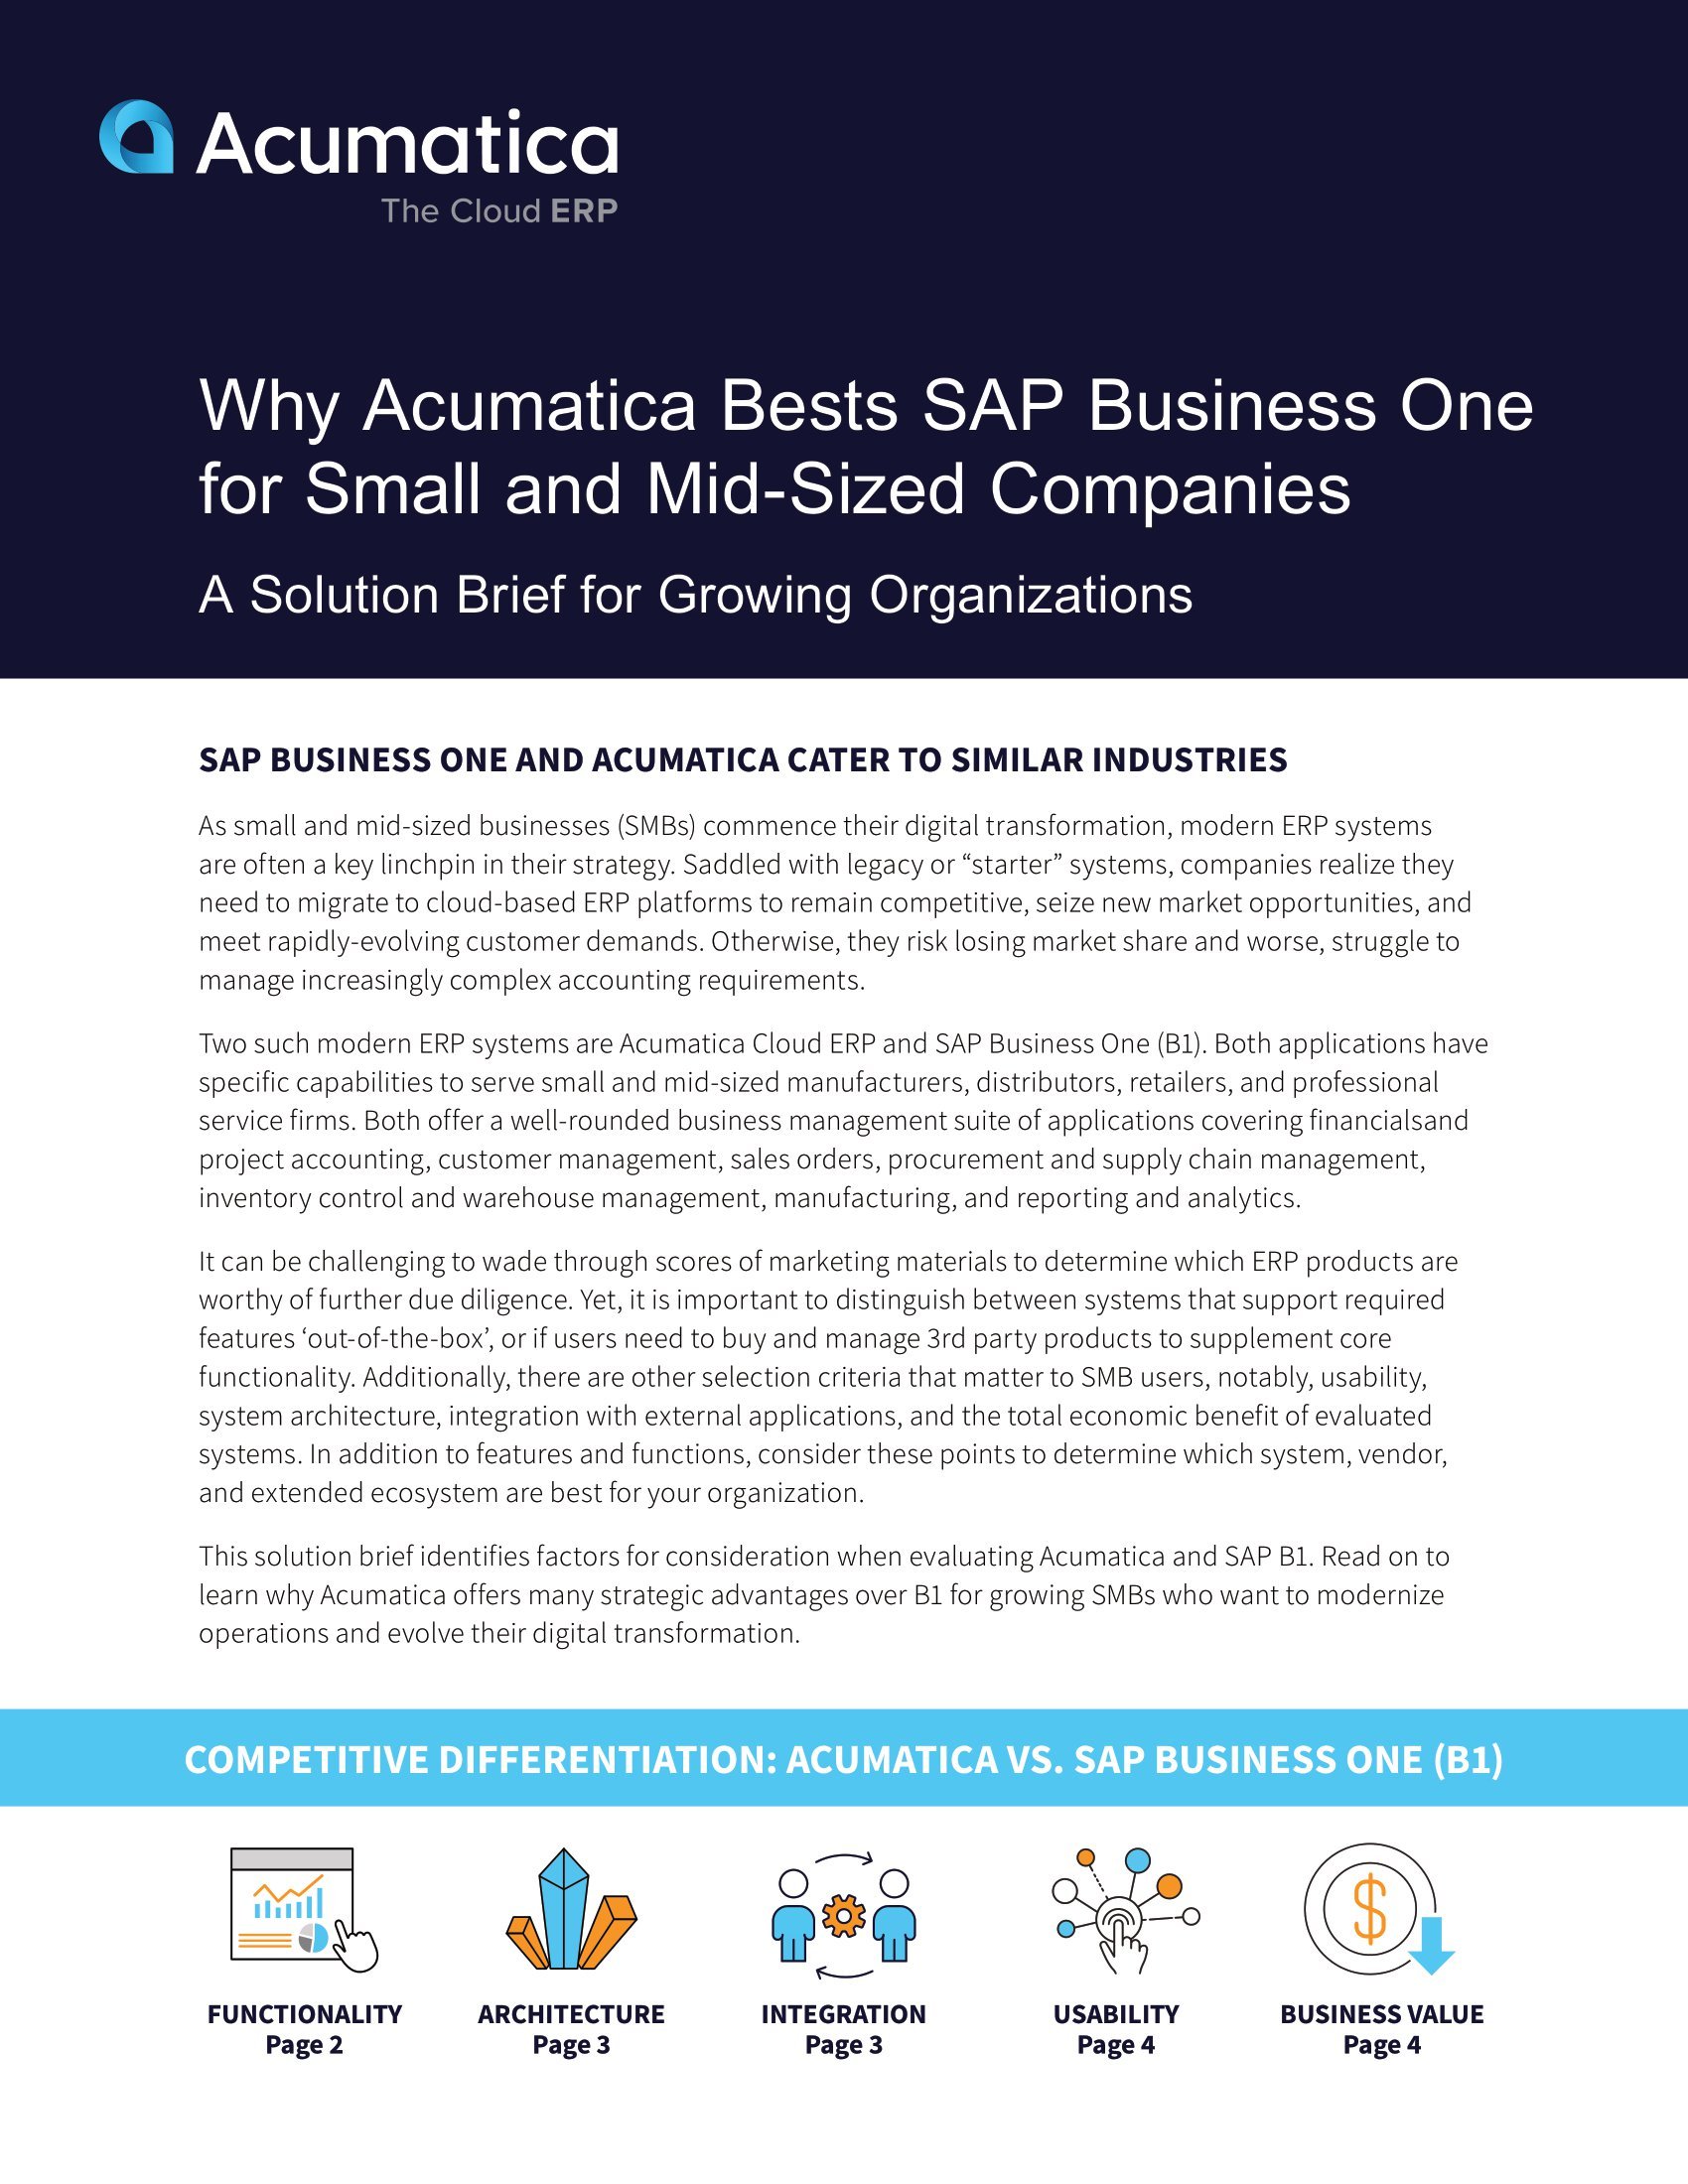 Comparez Acumatica à SAP Business One